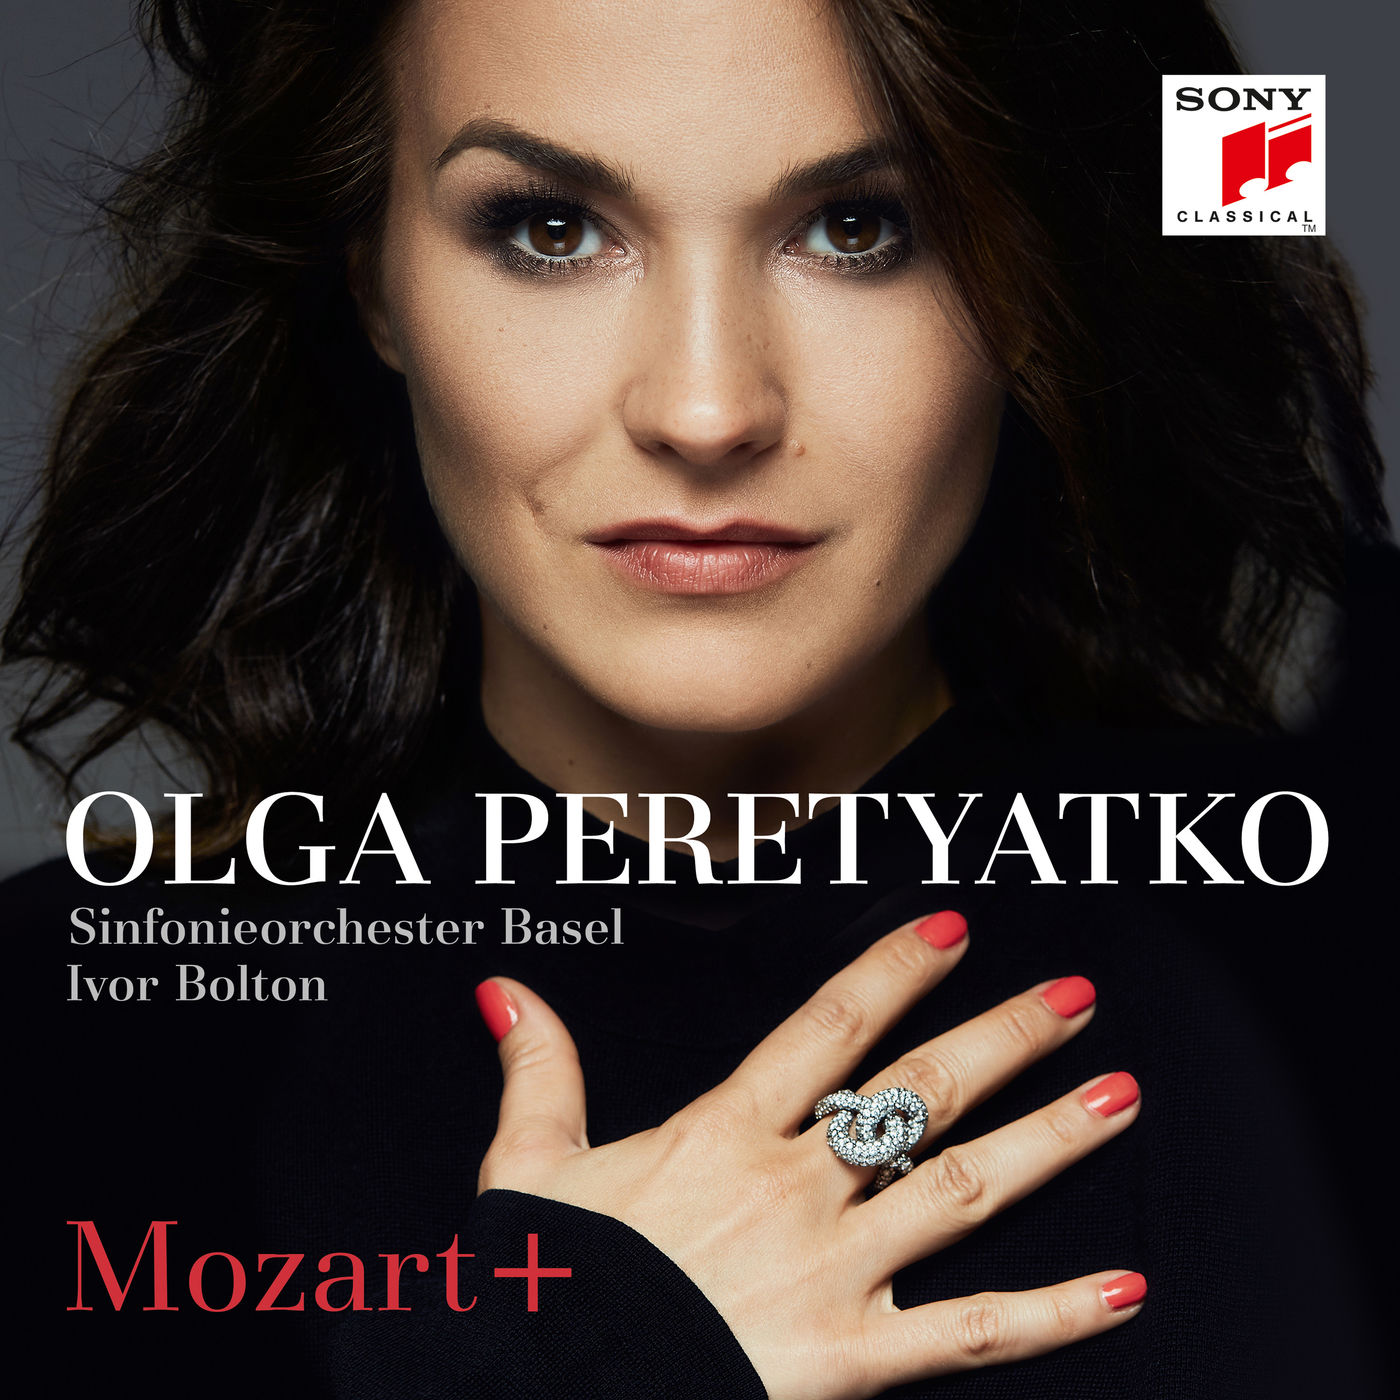 Olga Peretyatko - Mozart+ (2019) [FLAC 24bit/96kHz]